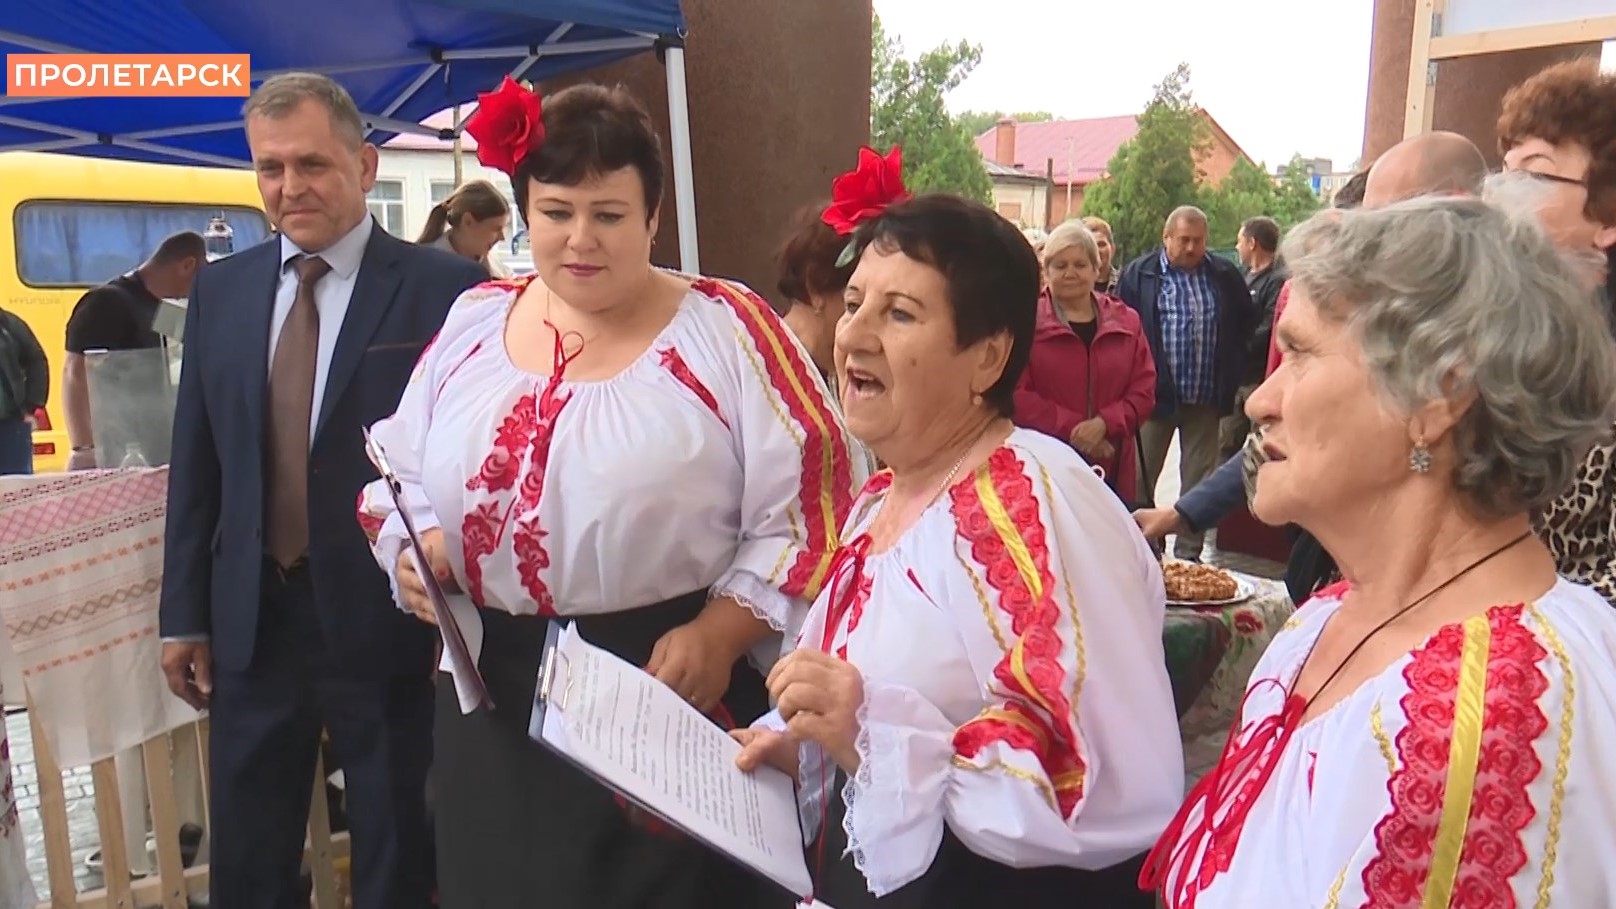 «Слава Дона — в дружбе народов» — межрайонный этнокультурный фестиваль провели в Пролетарске